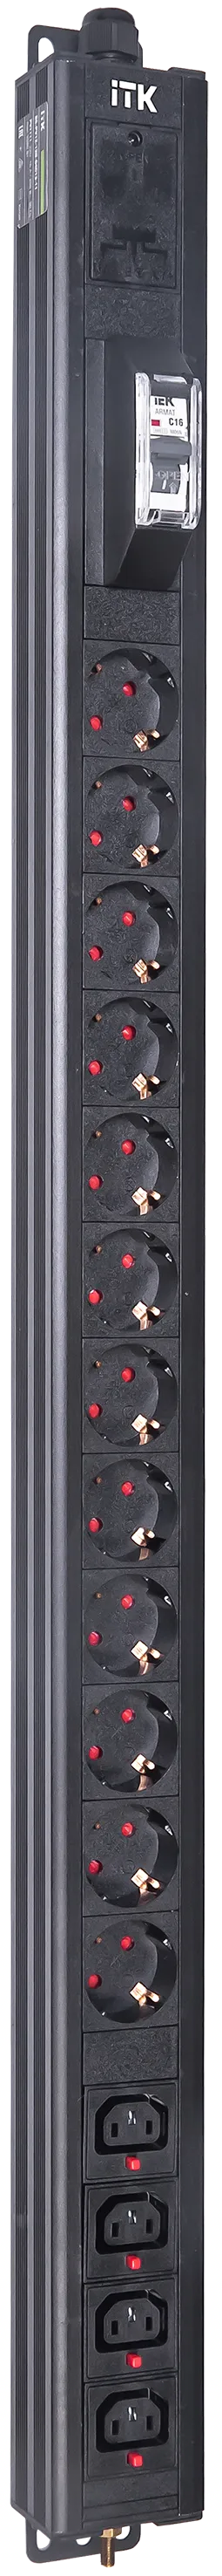 Вертикальный комбинированный блок распределения питания PDU ITK включает в себя розетки двух типов: 12 розеток Schuko и 4 розетки C13 – что позволяет подключать с их помощью различное оборудование. PDU ITK изготавливается из высококачественных термостойких материалов и пластмасс, оснащается 2,6 метровым кабелем электропитания с вилкой Schuko. PDU ITK прекрасно справляется с задачей по электроснабжению сетевого оборудования в шкафах и стойках, а также с требованием защиты от токов короткого замыкания и перенапряжения. PDU ITK соответствует российским и международным стандартам качества и устанавливается с помощью кронштейнов, при этом положение кронштейнов можно менять, либо безынструментальным методом при помощи монтажных штифтов.